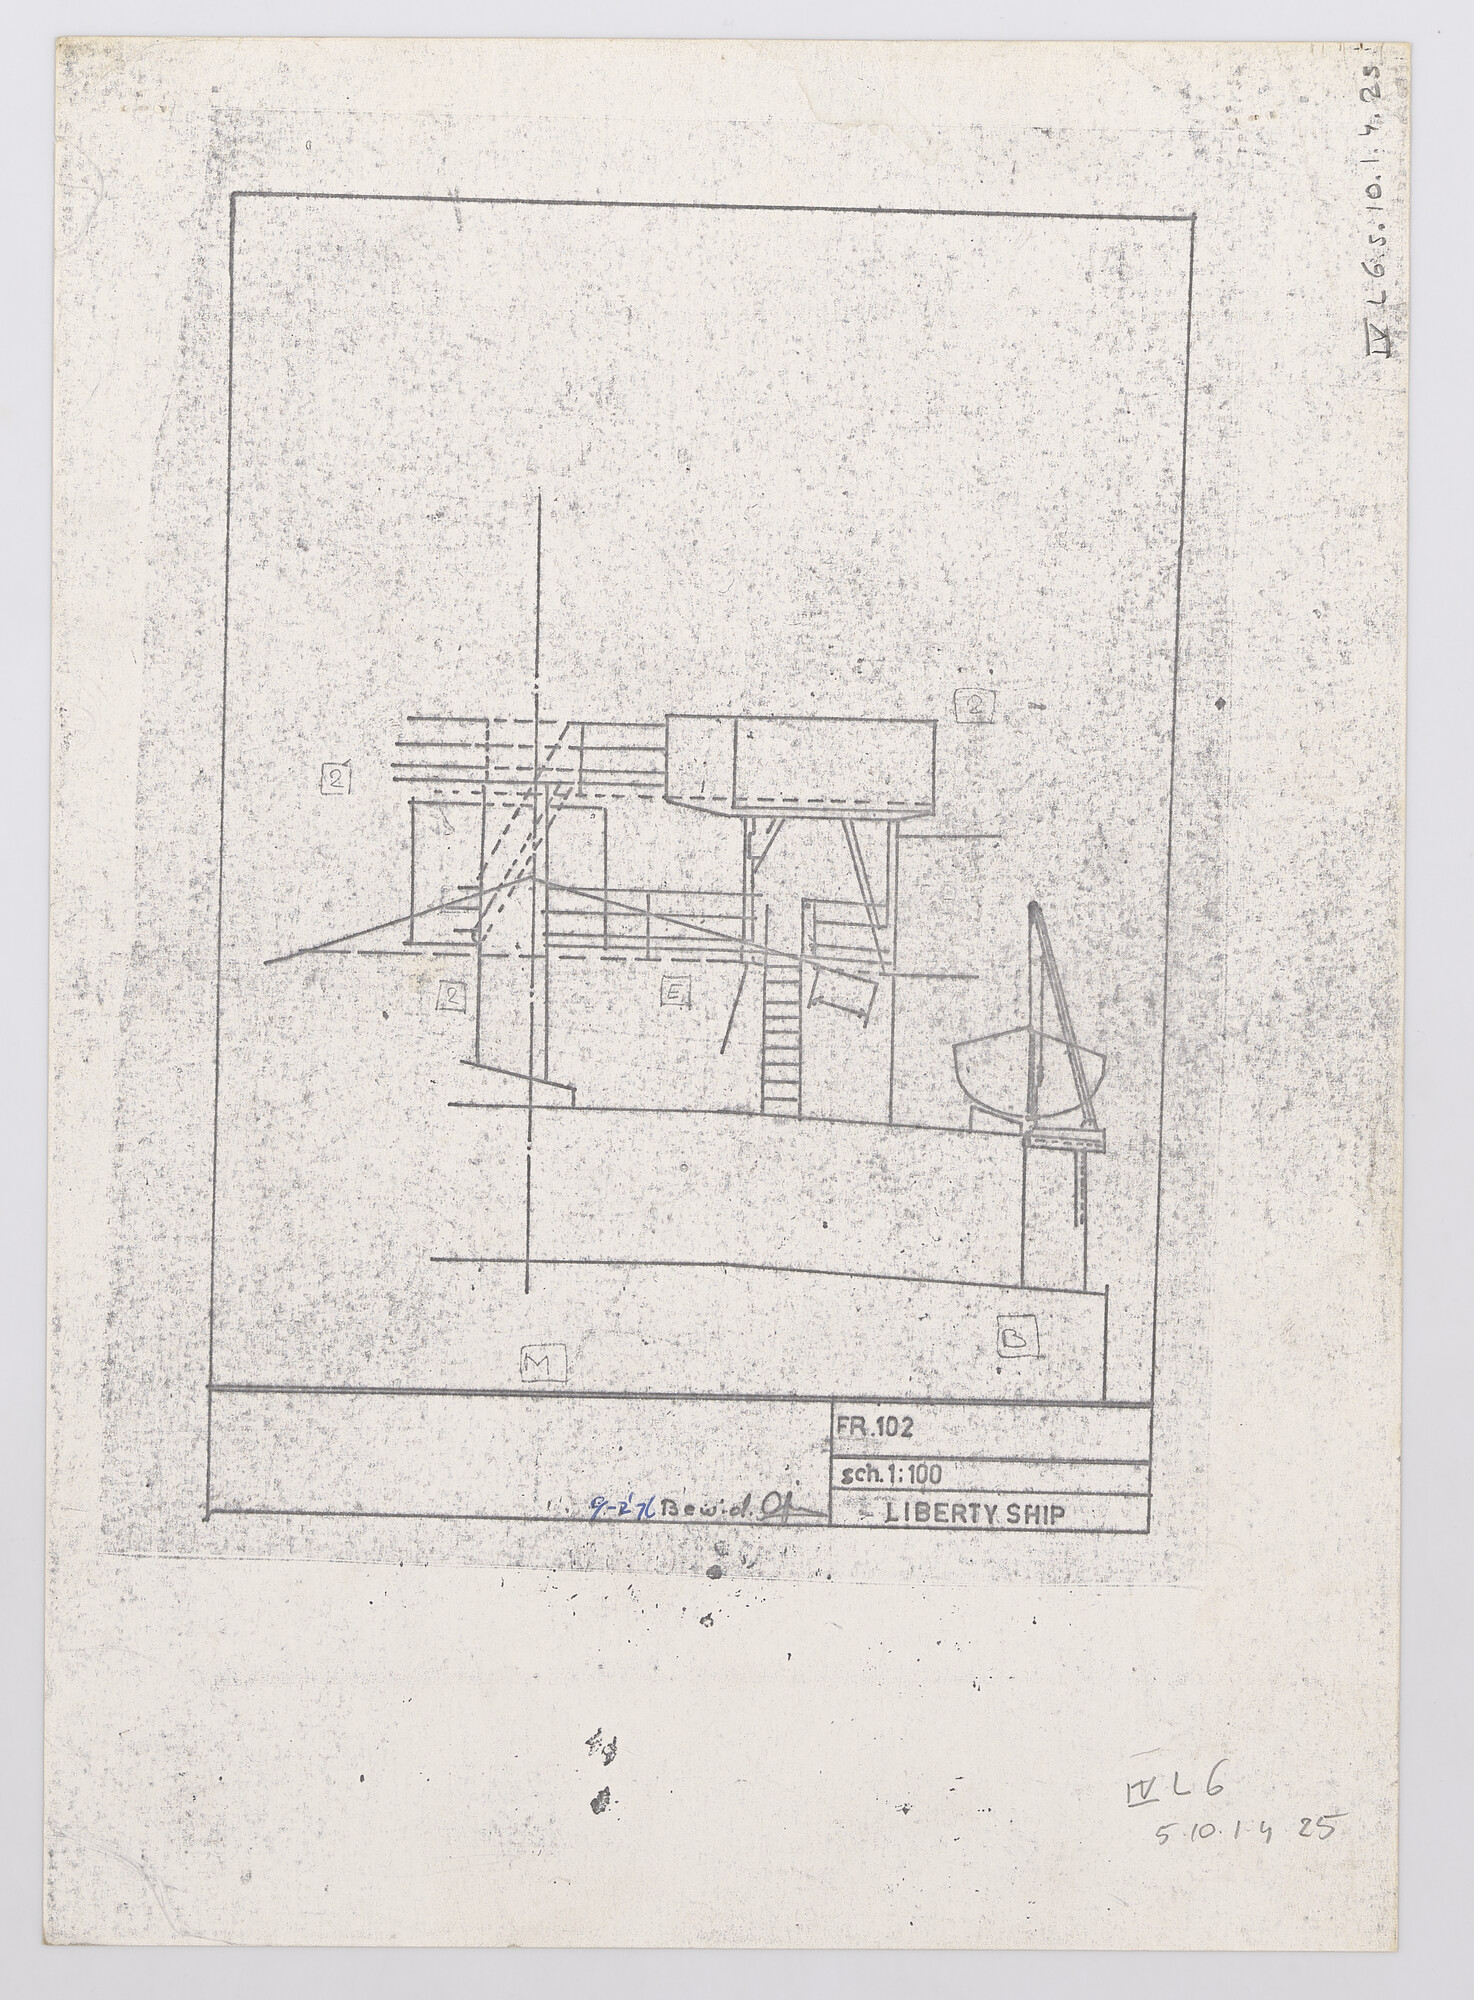 2016.2214; Het libertyschip ss. 'Blijdendijk' van de Holland-Amerika Lijn, 1943; technische tekening